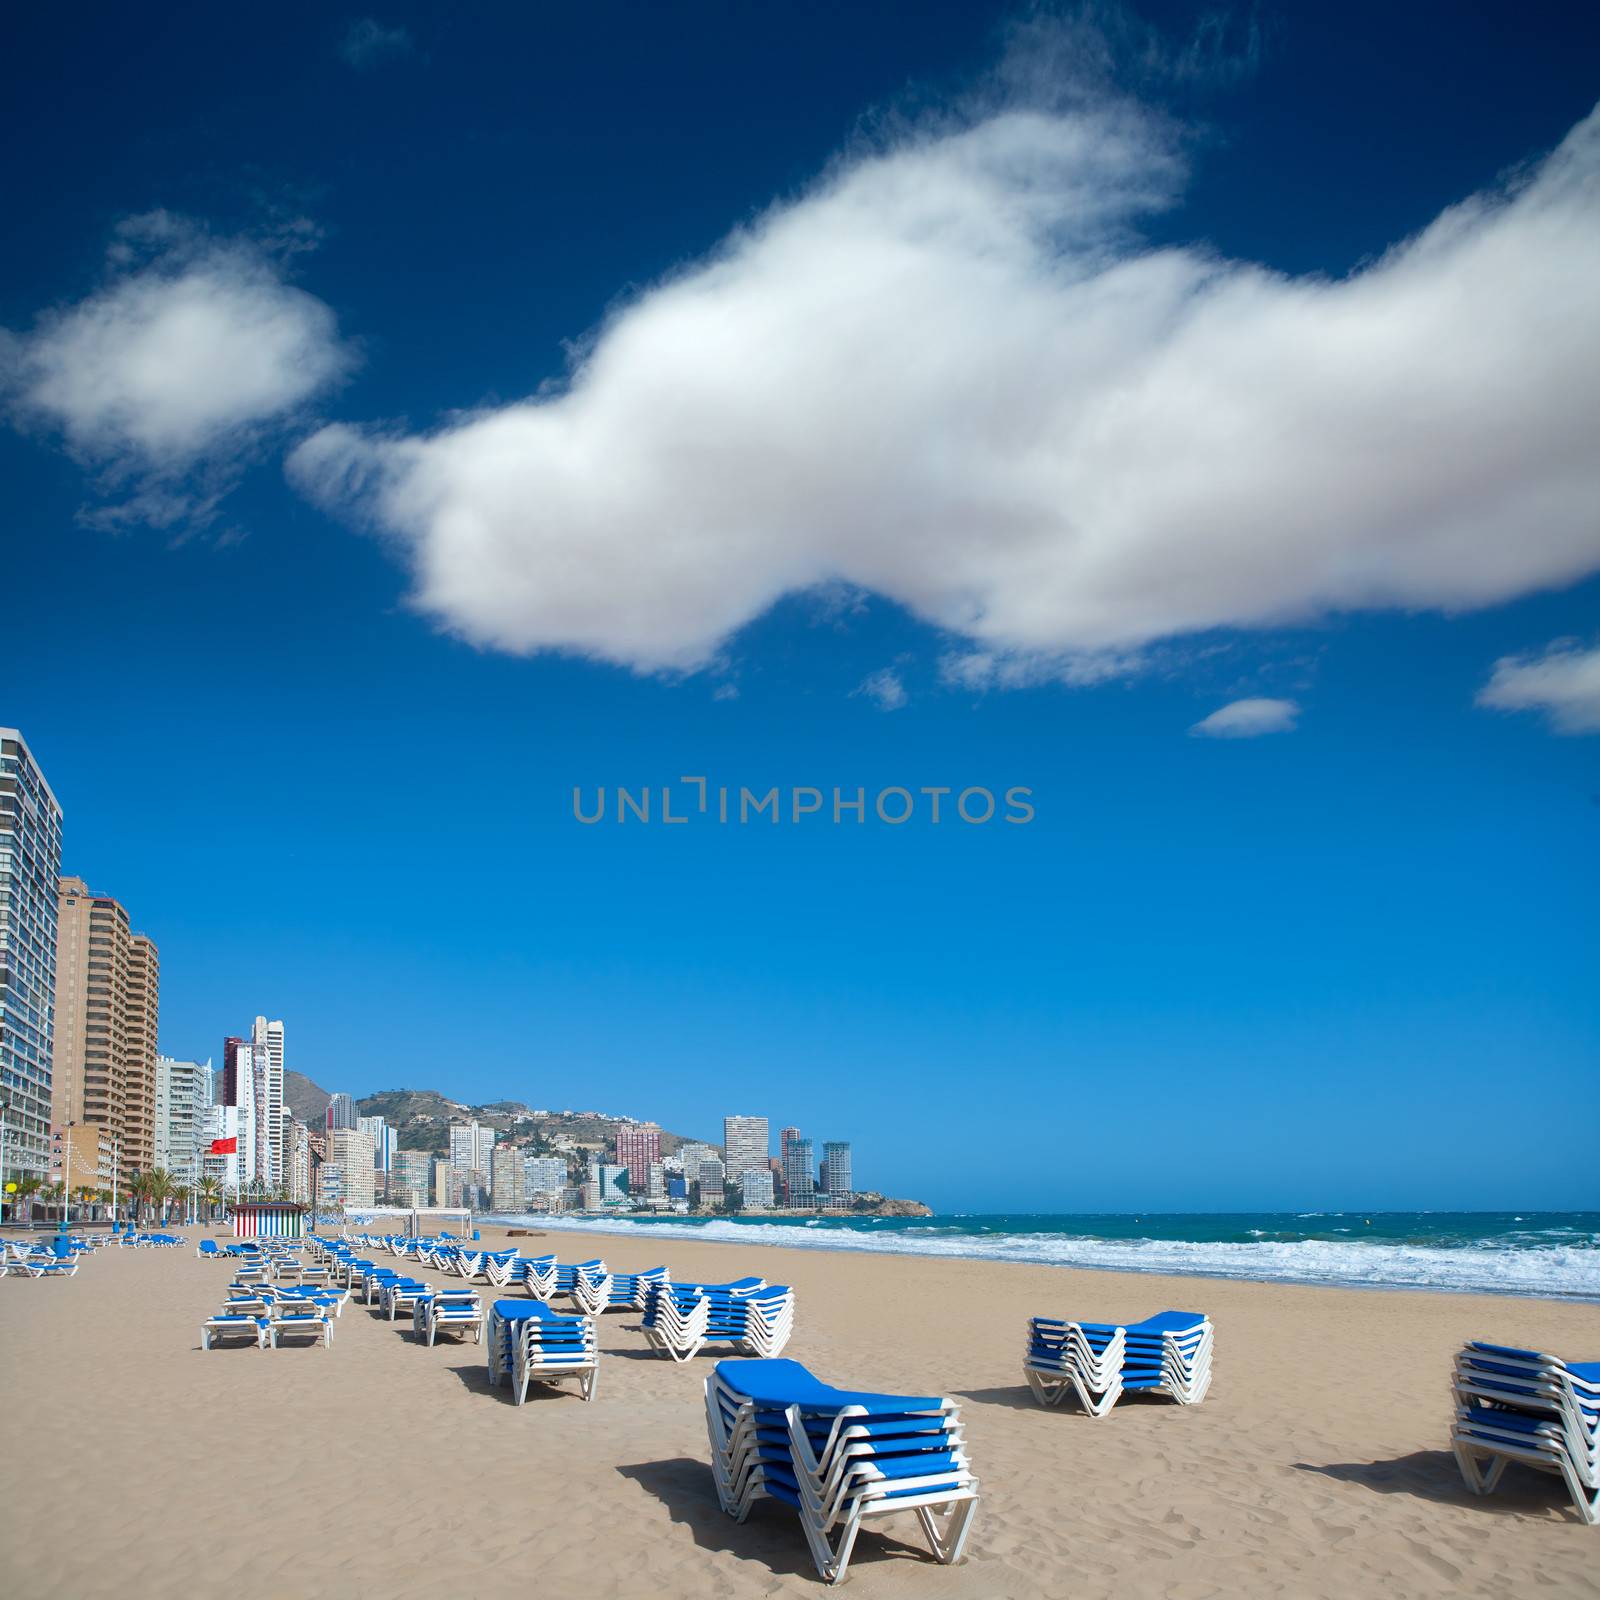 Benidorm Alicante beach buildings and Mediterranean by lunamarina